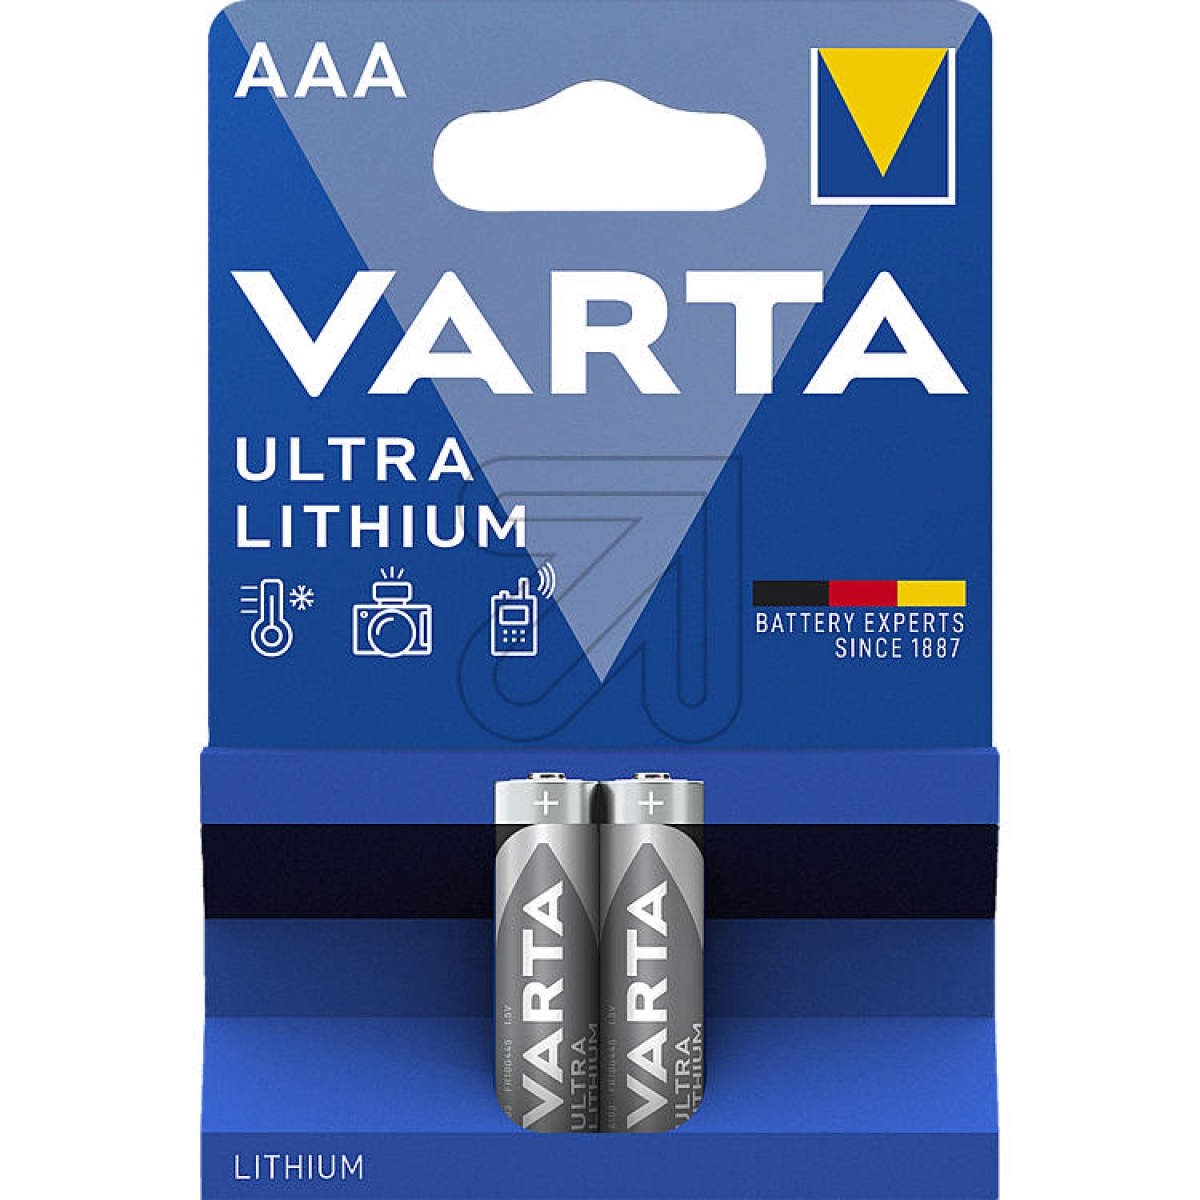 VARTAULTRA LITHIUM AAA 06103301402 (Micro)-Preis für 2 St.